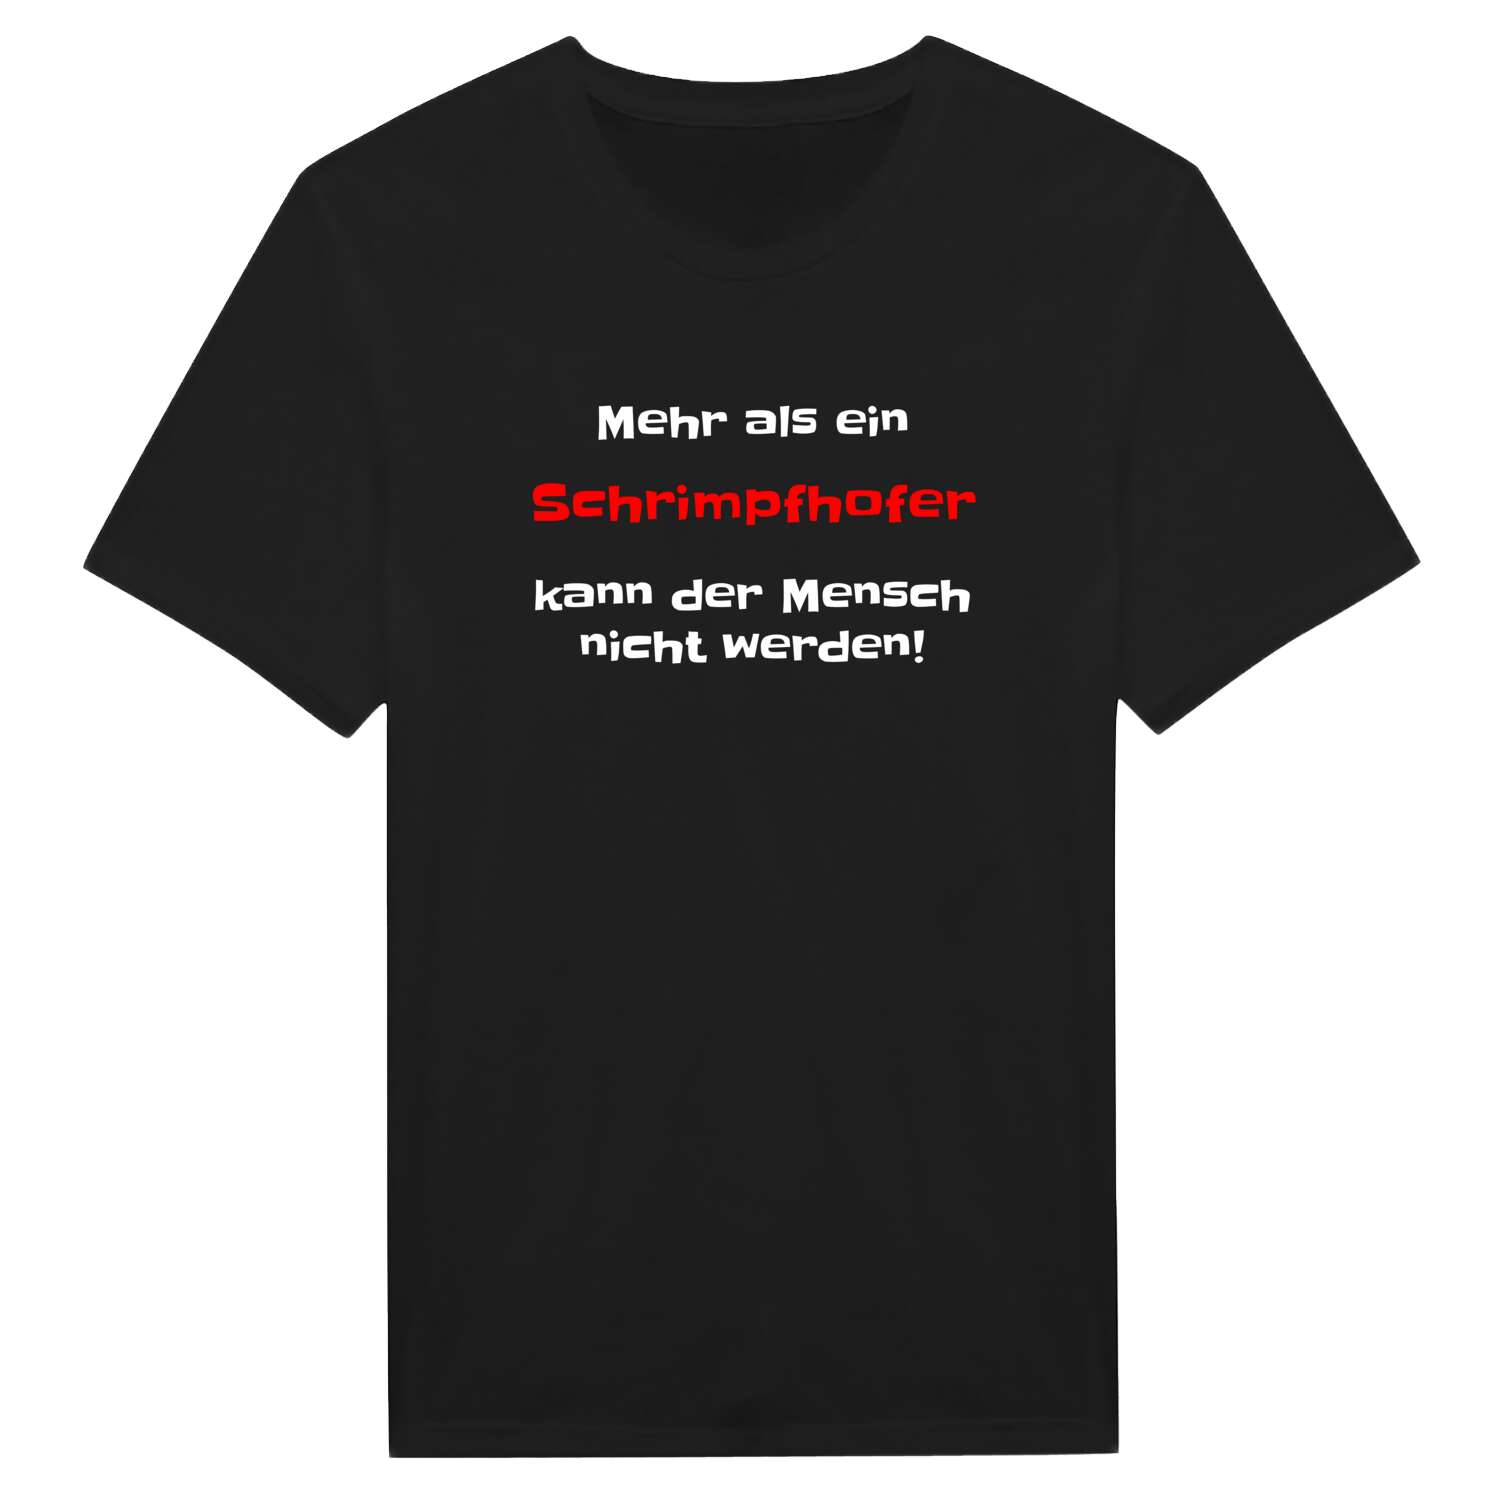 Schrimpfhof T-Shirt »Mehr als ein«